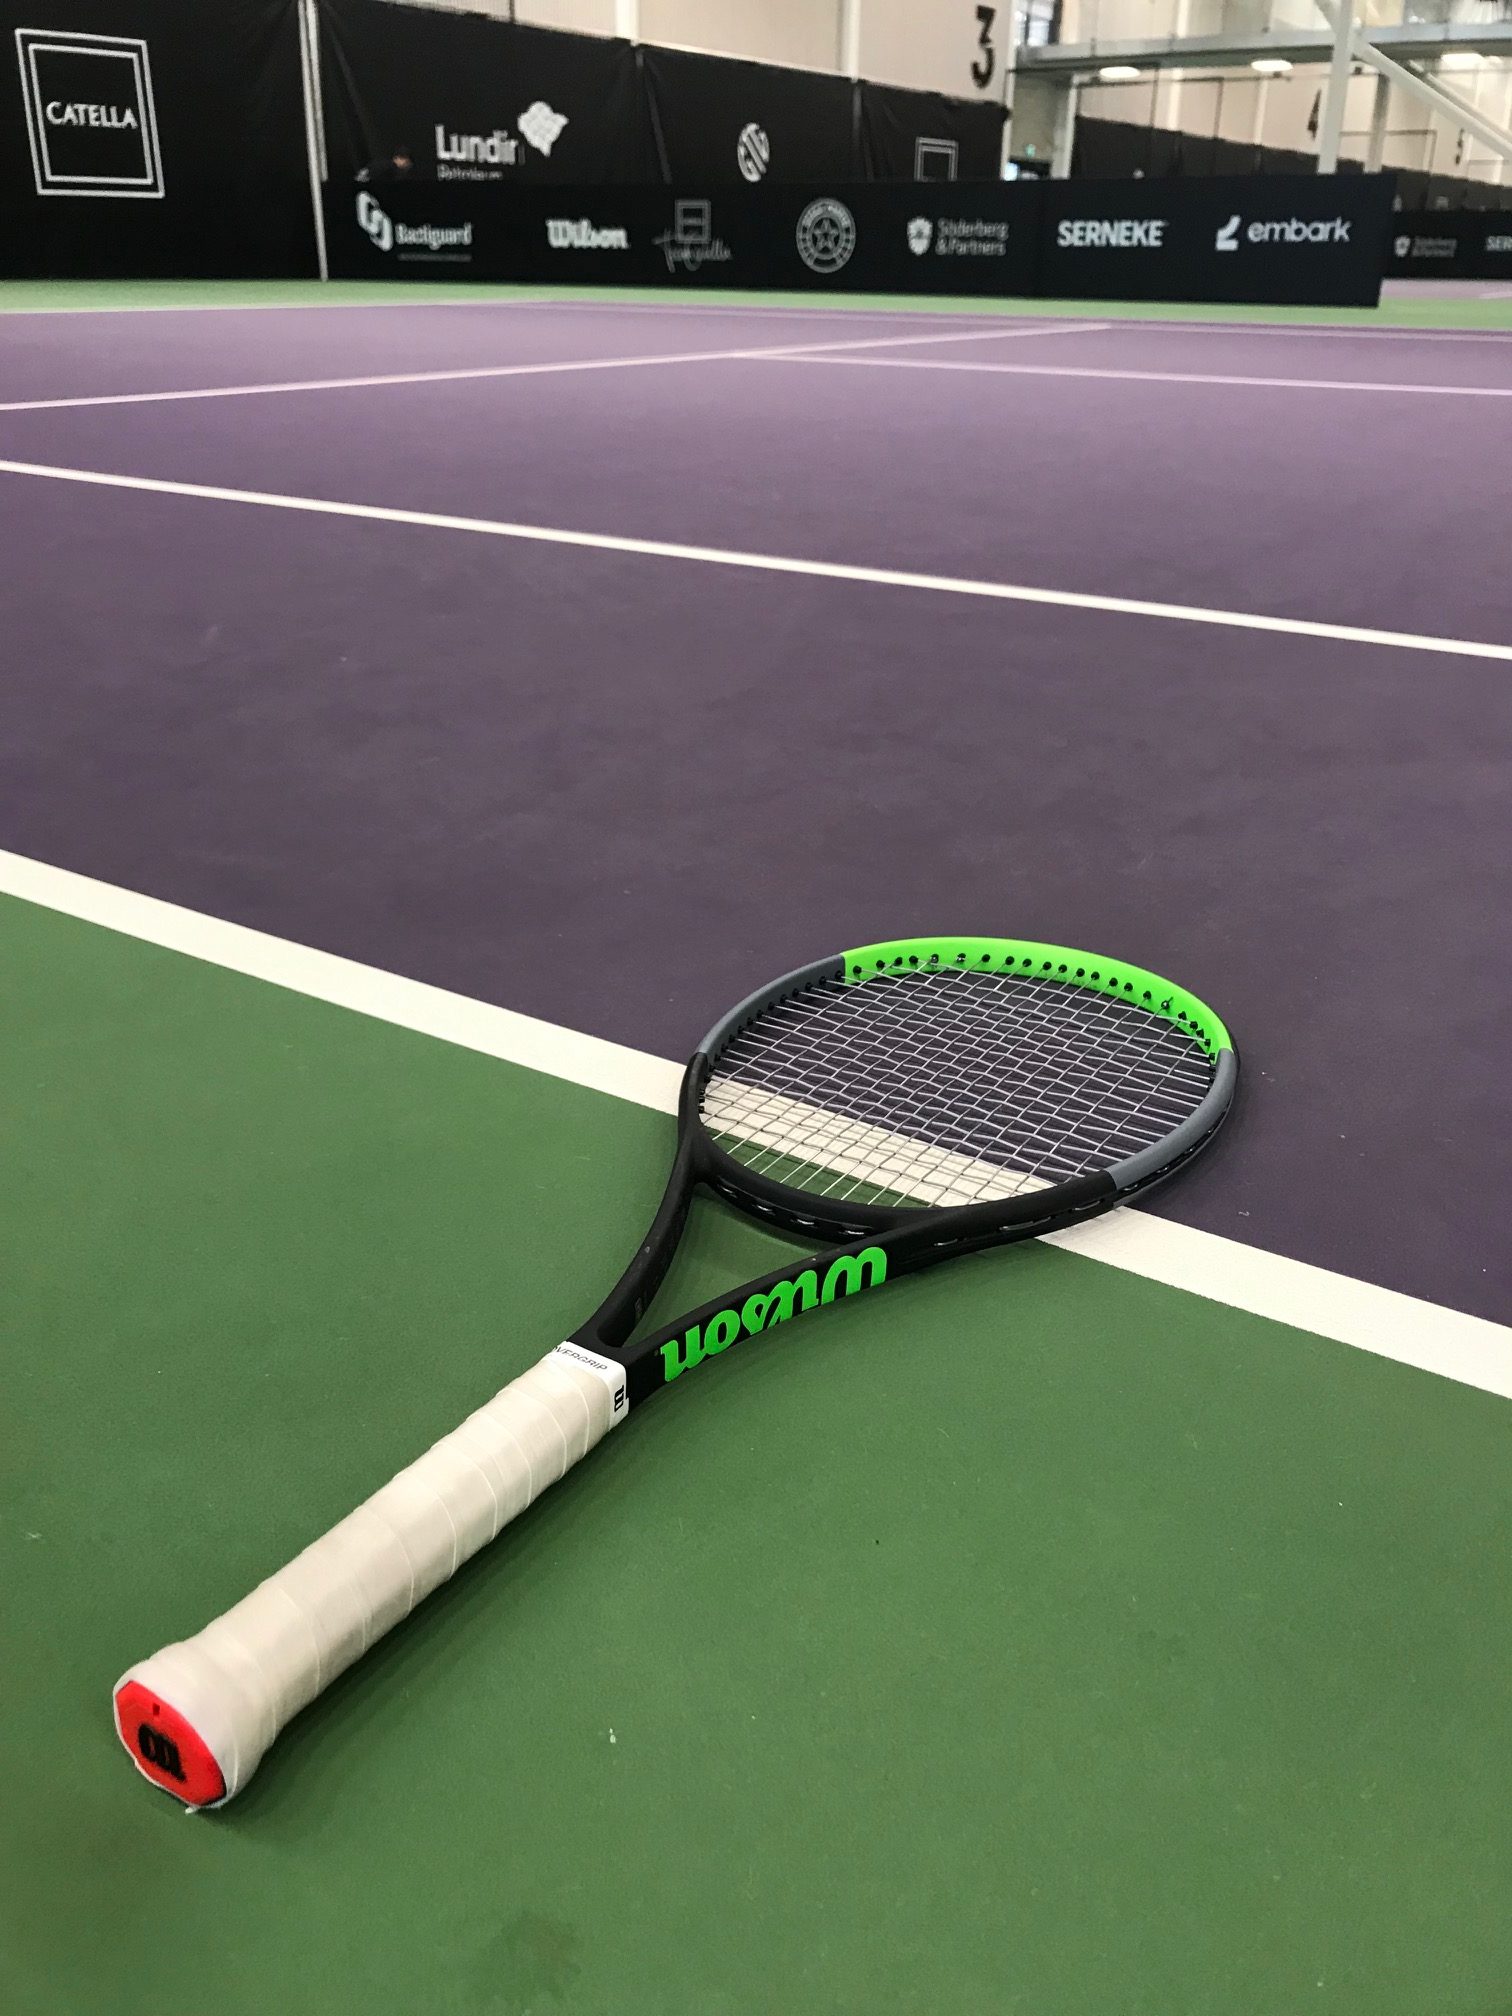 ginder identificatie Terminal Gear of the Year 2019: Racquets - Tennisnerd.net - Top 10 Racquets